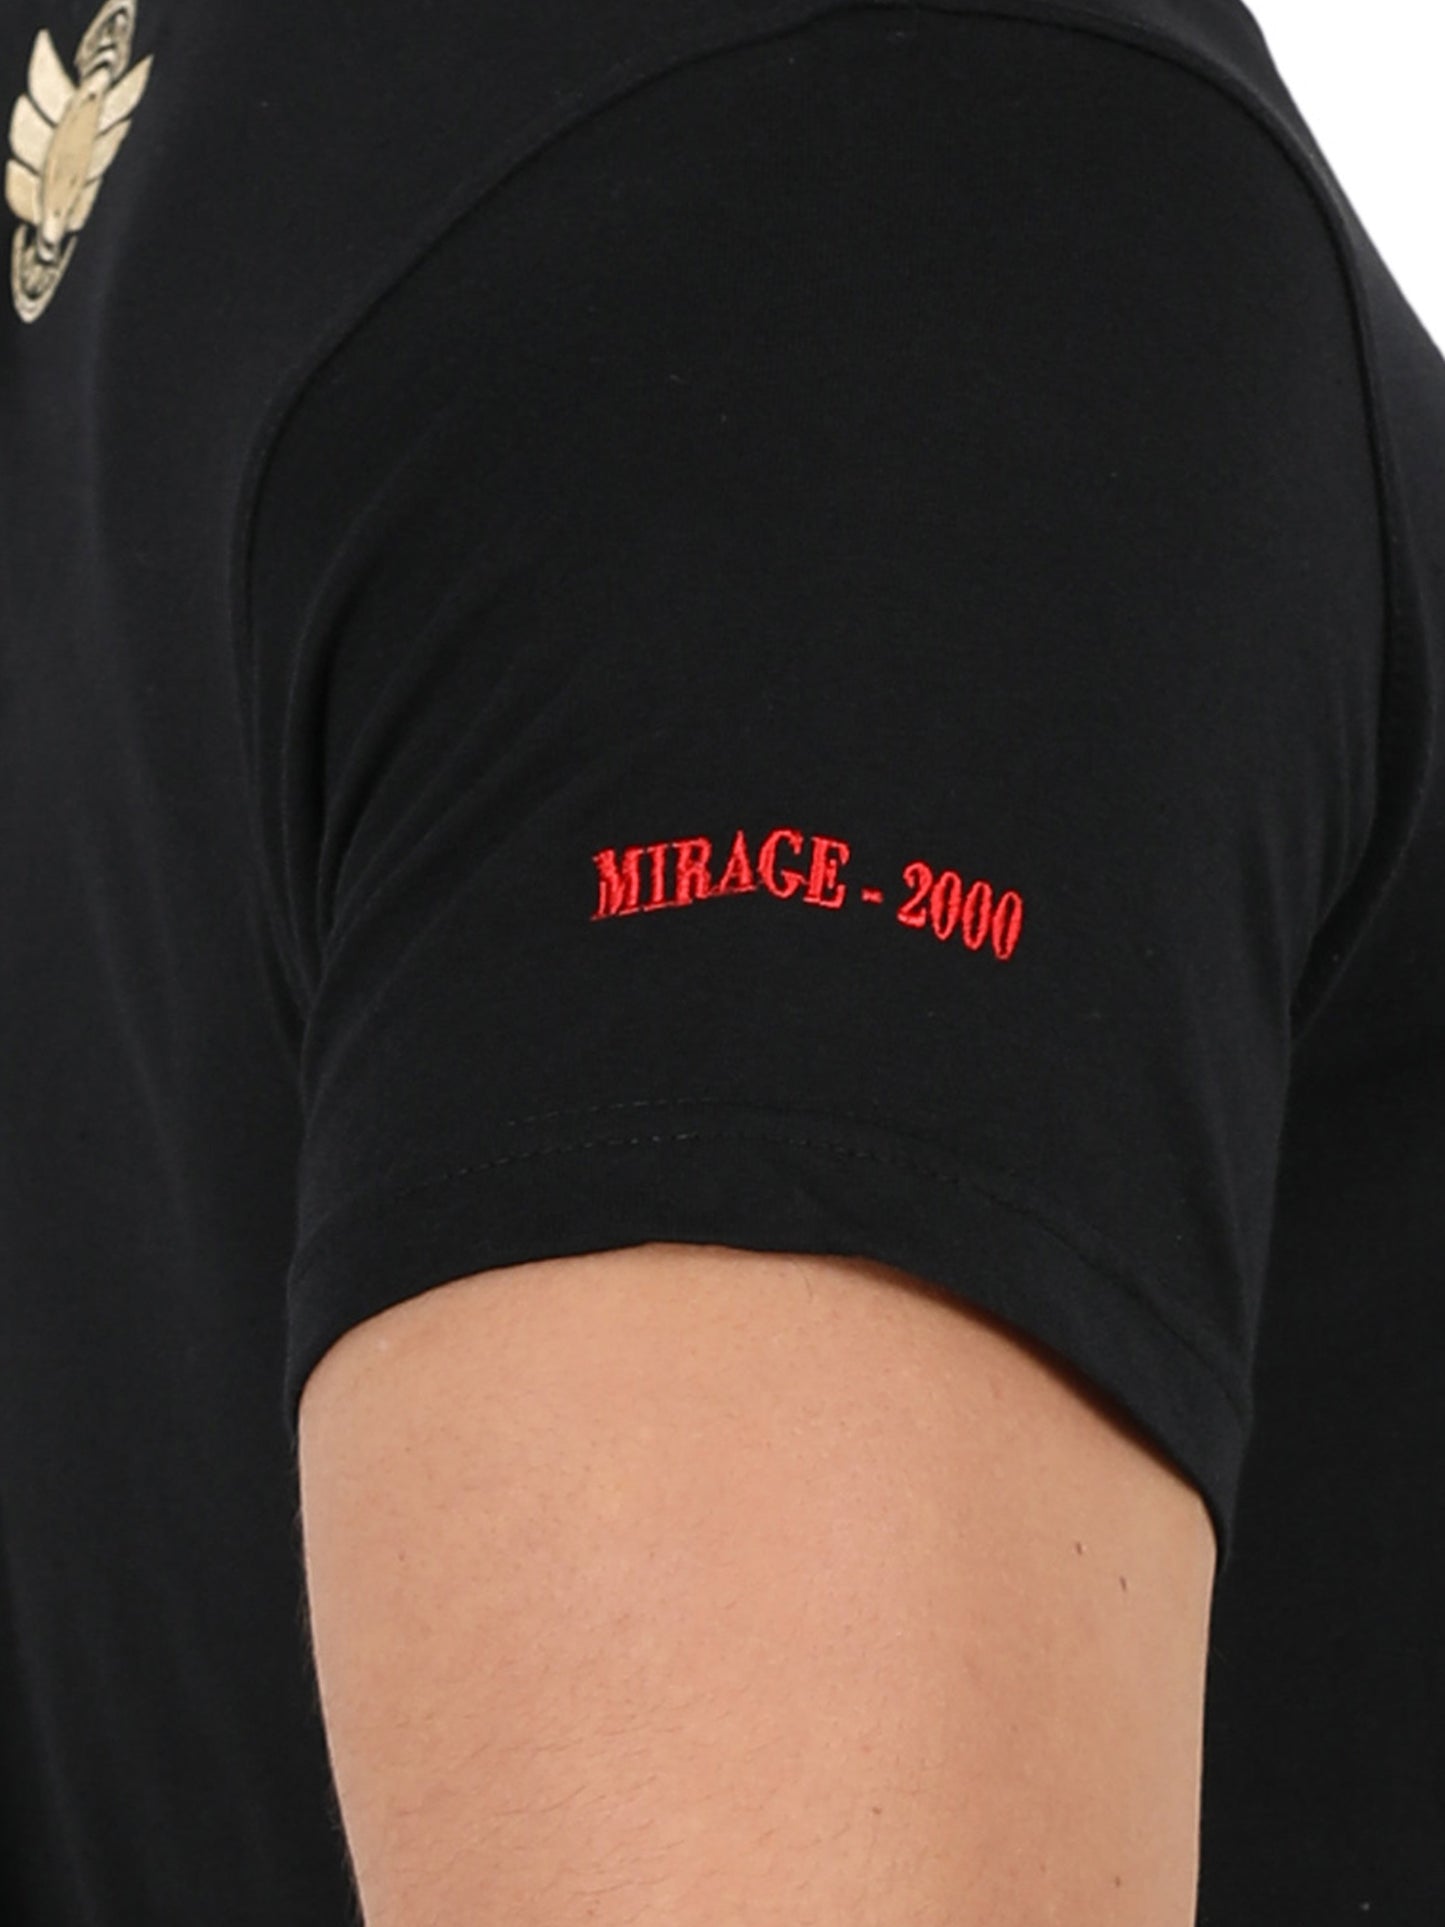 MIRAGE - 2000 | ROUND NECK T-SHIRT